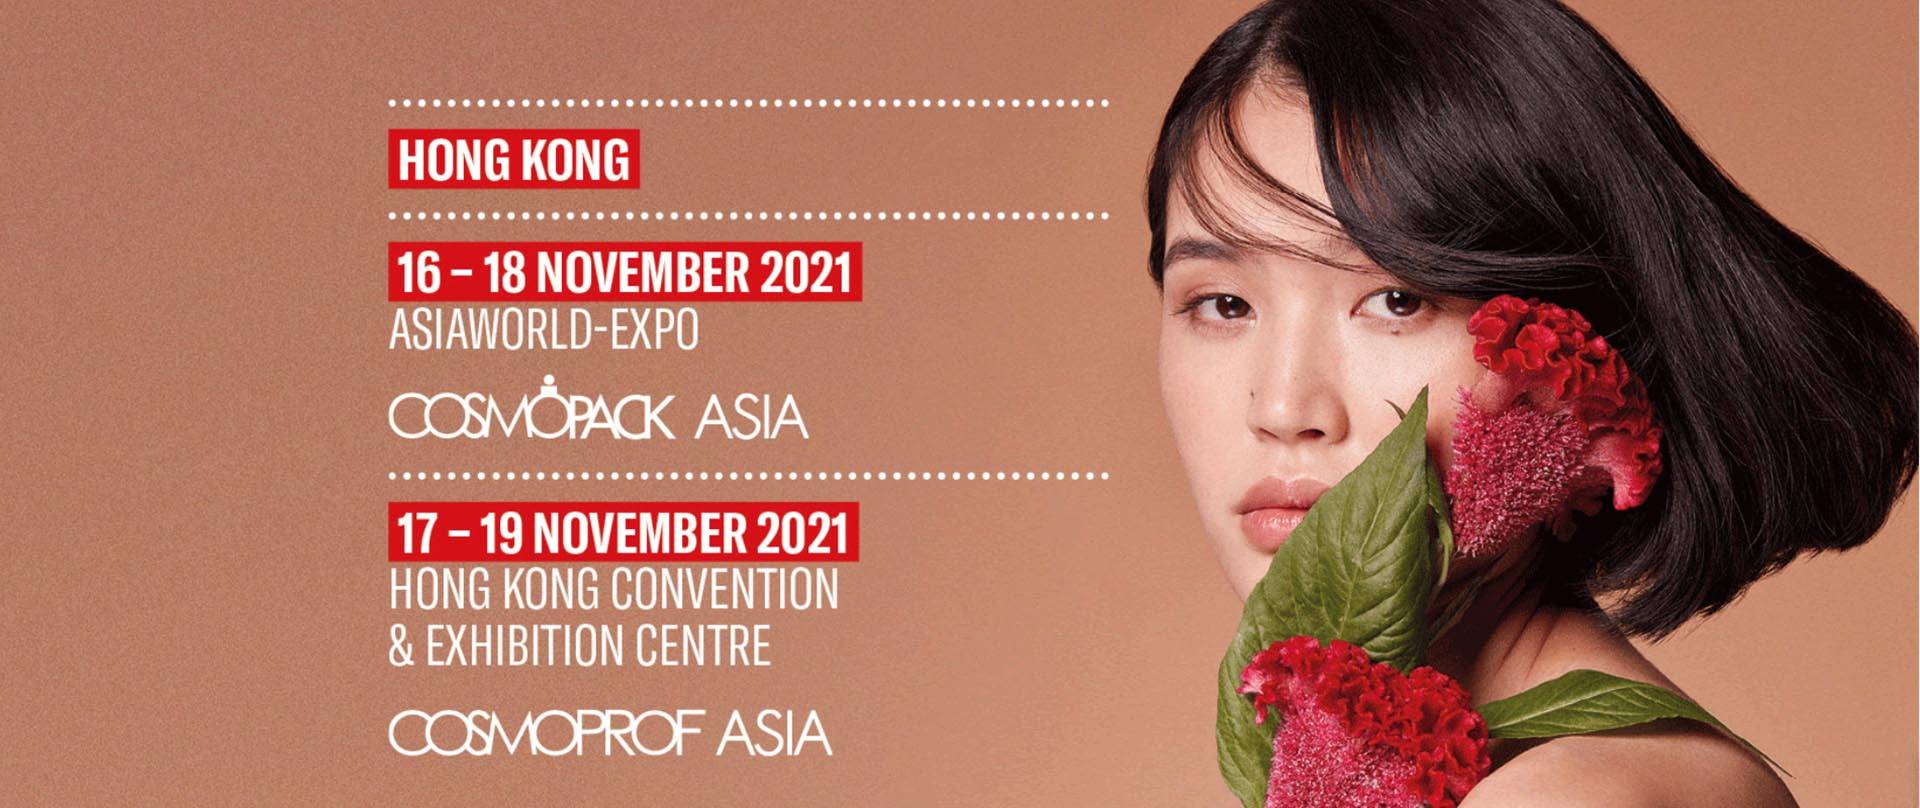 Cosmoprof-Àisia ann an Hongkong 2021